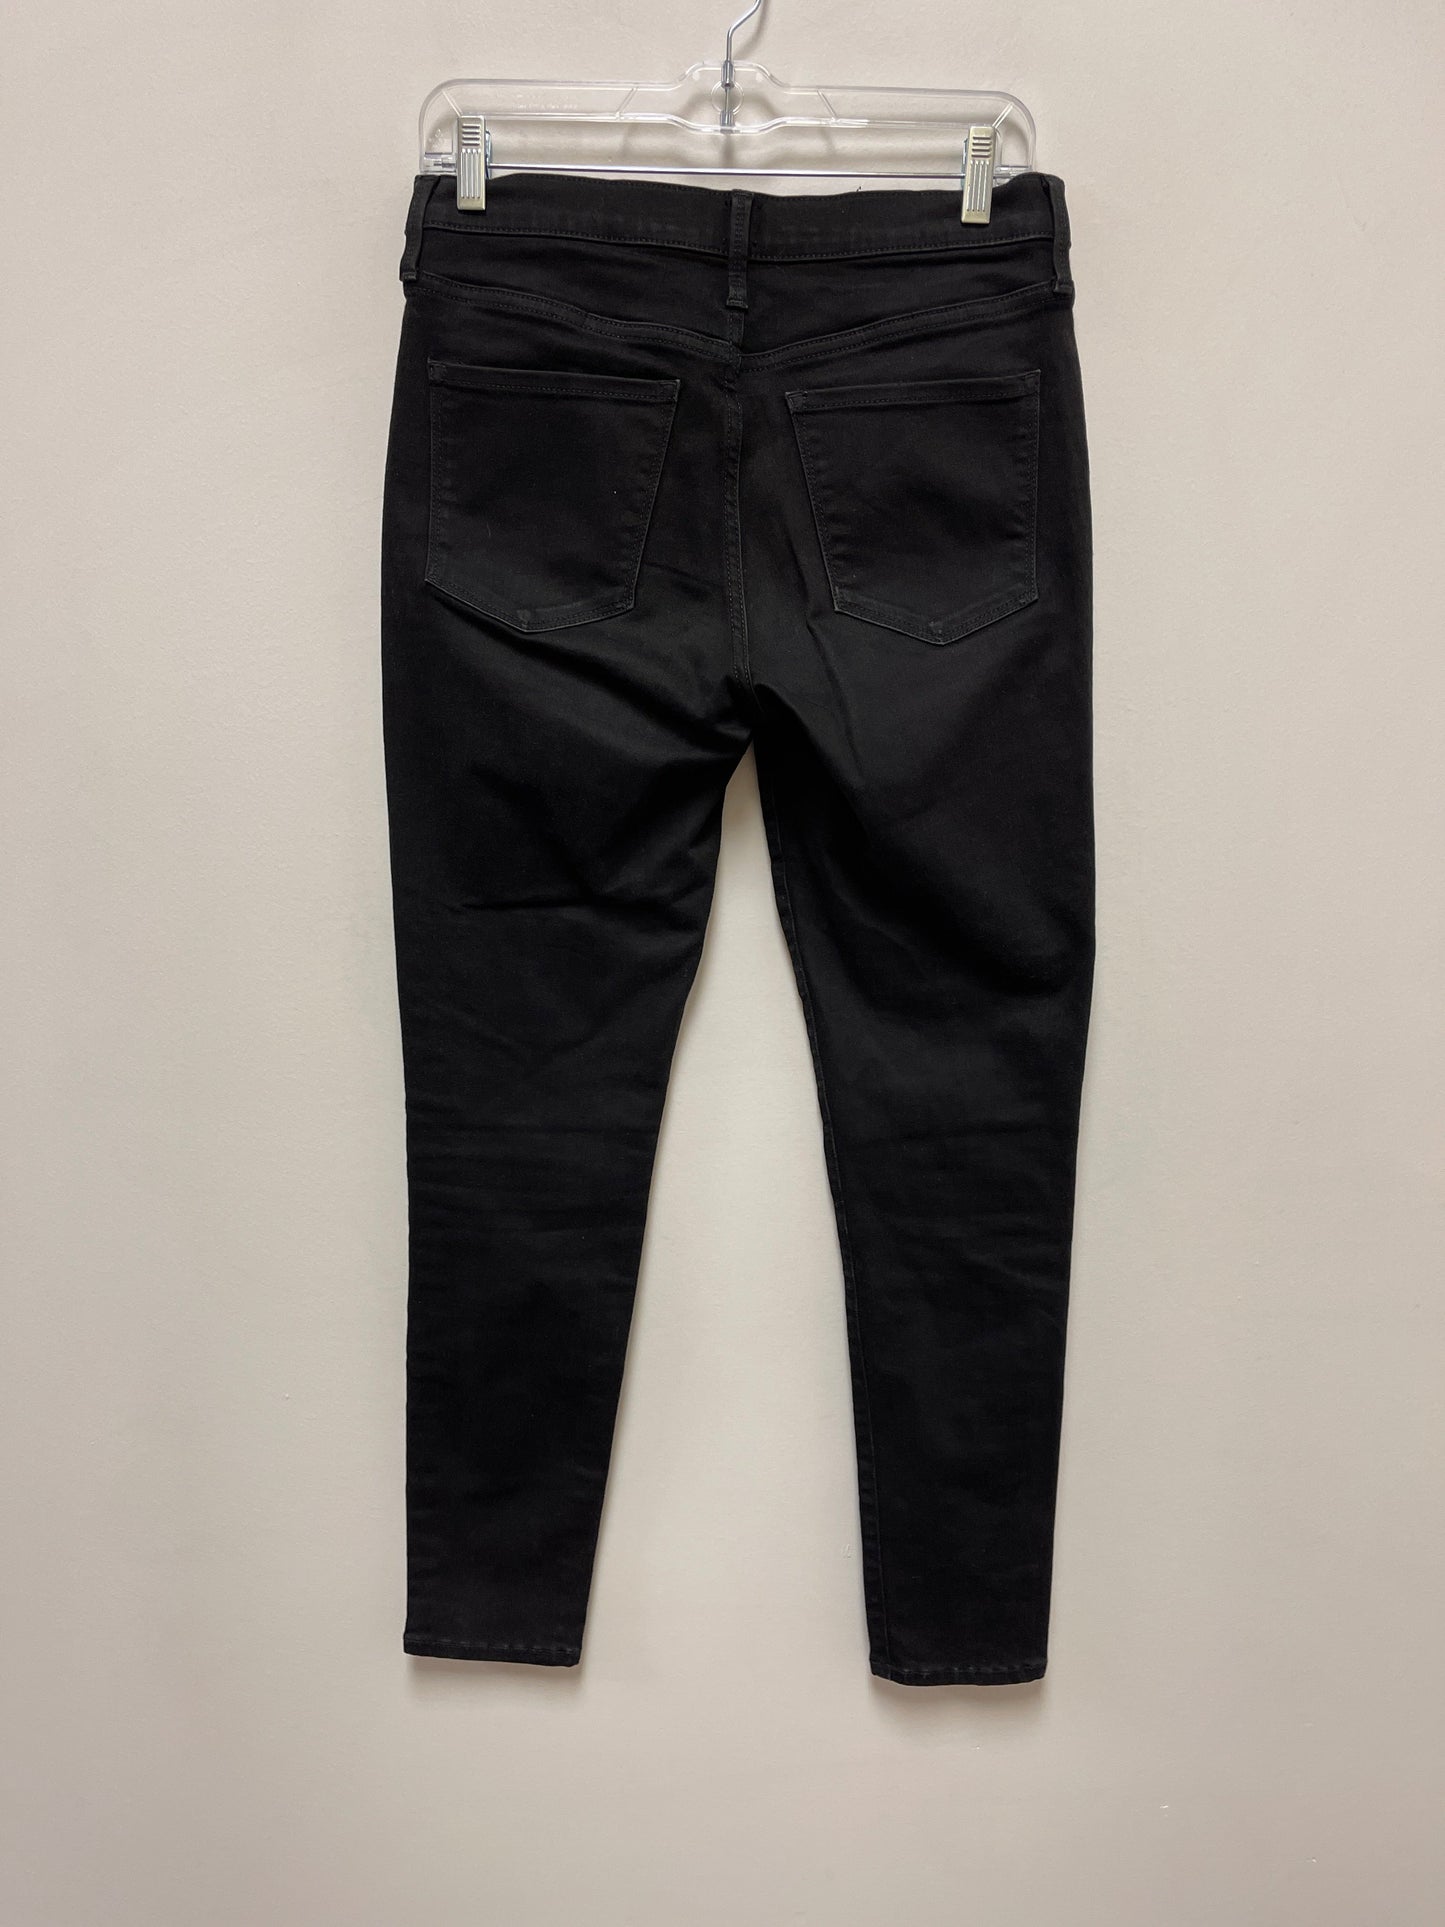 Black Jeans Skinny Gap, Size 6